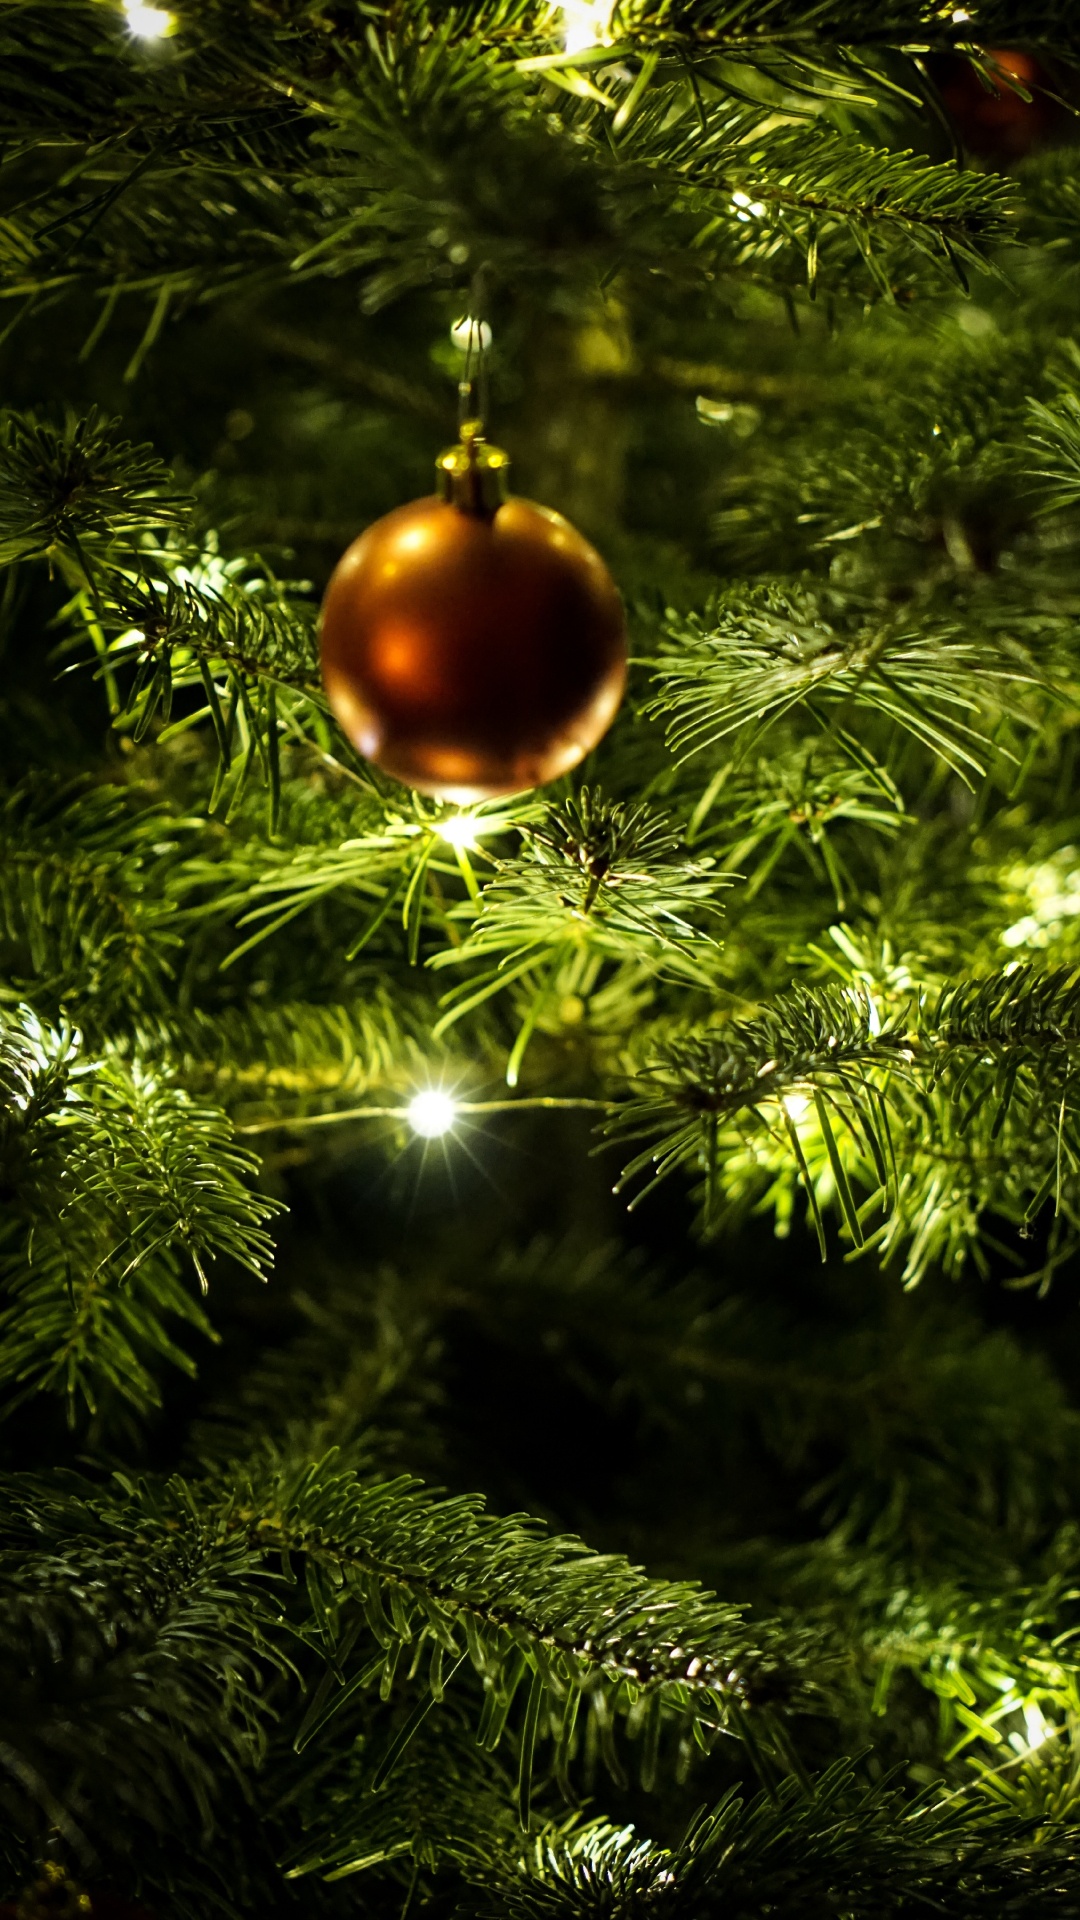 新的一年, 圣诞节那天, 圣诞节的装饰品, 圣诞装饰, 圣诞树 壁纸 1080x1920 允许